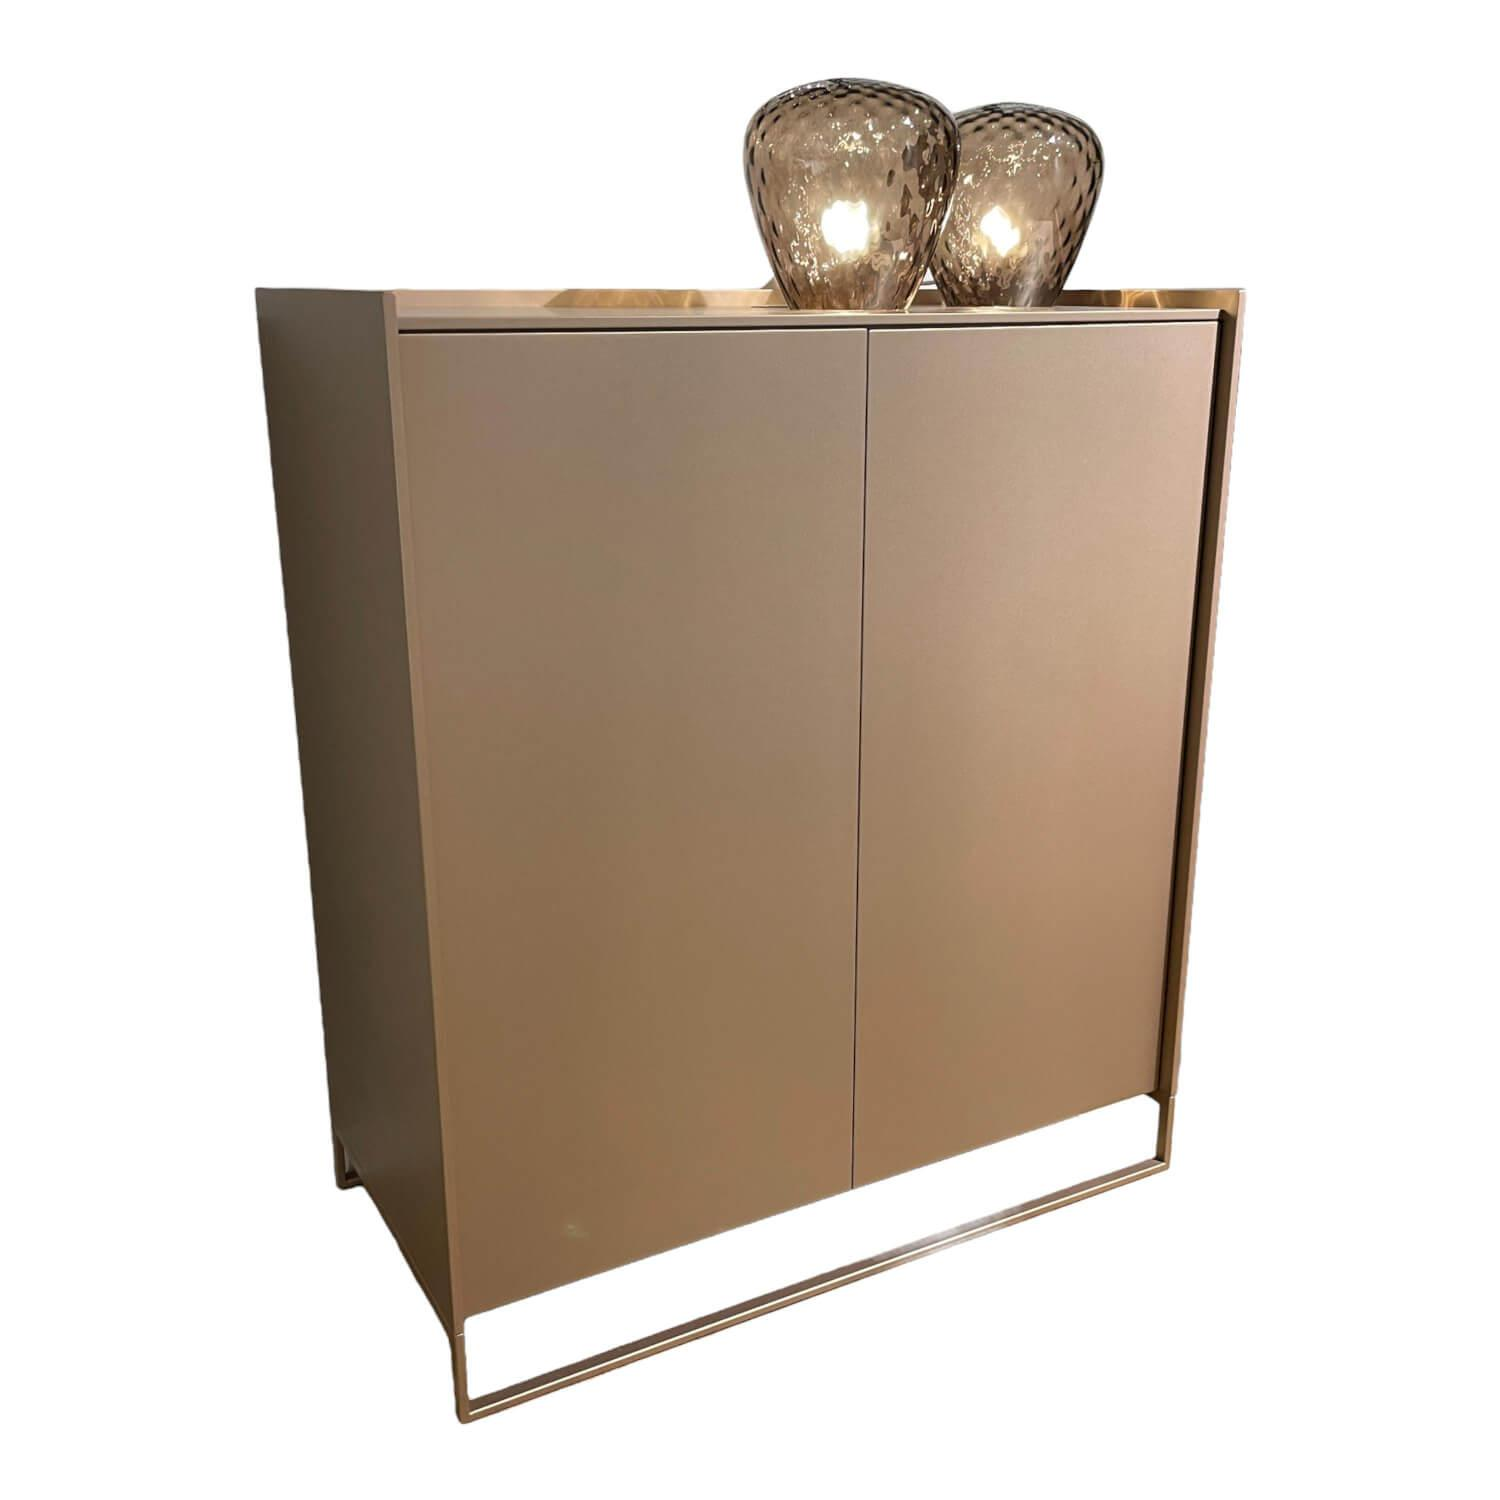 Kommode Lean Box Lack Bronze Metallic 451 Mit 2 Türen Und Sichtrückwand